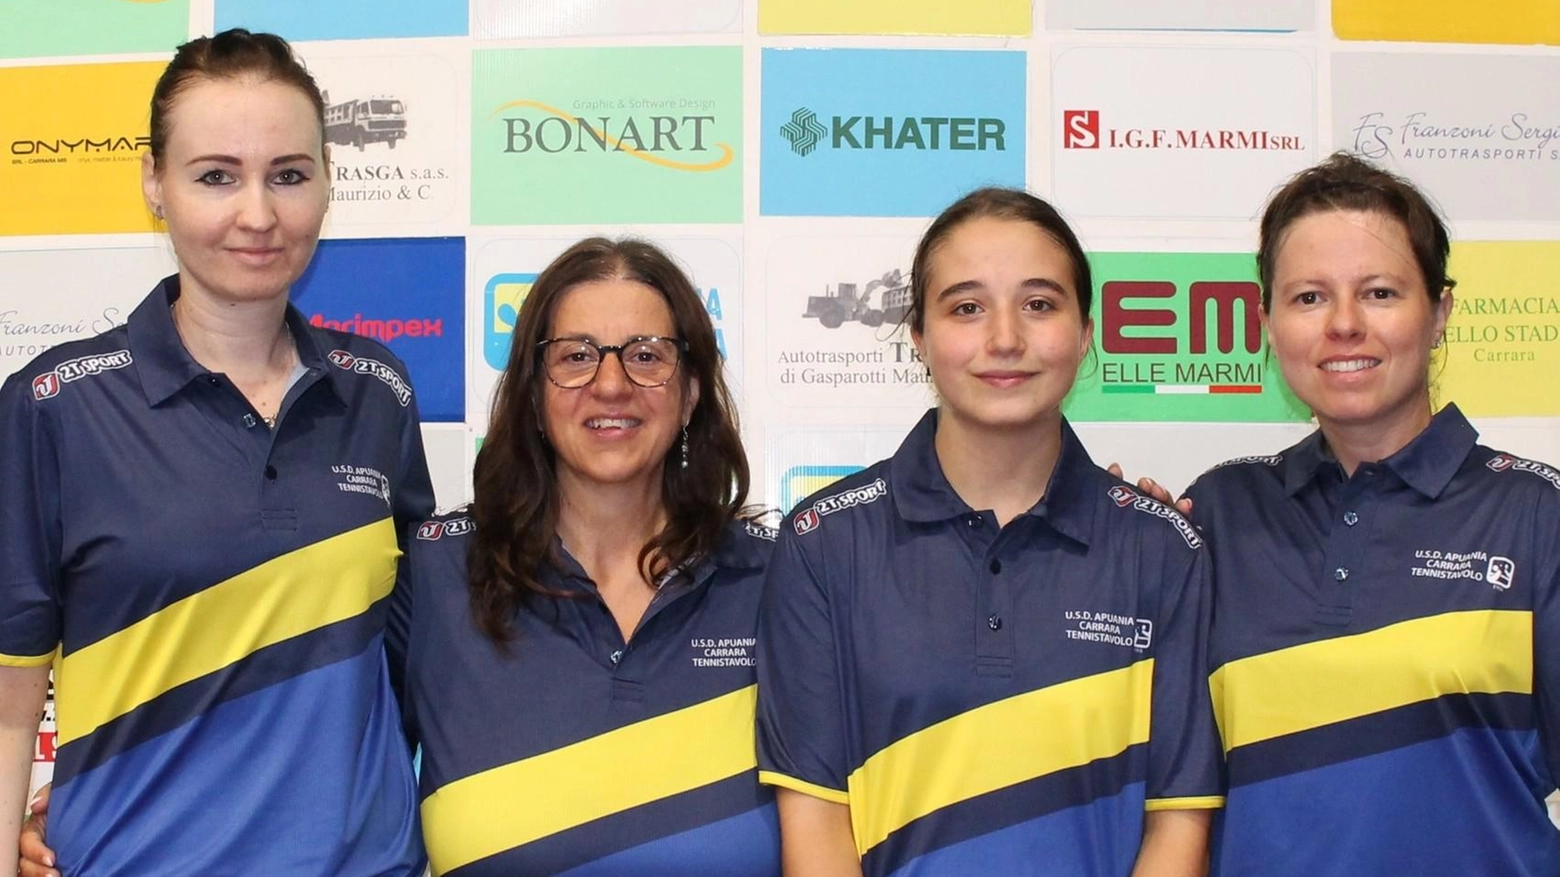 La squadra femminile di tennis tavolo dell'Apuania Carrara chiude la stagione con tre sconfitte nei playoff della serie A2, non riuscendo a ottenere la promozione in A1. Krisztina Nagy si distingue come unico punto positivo.